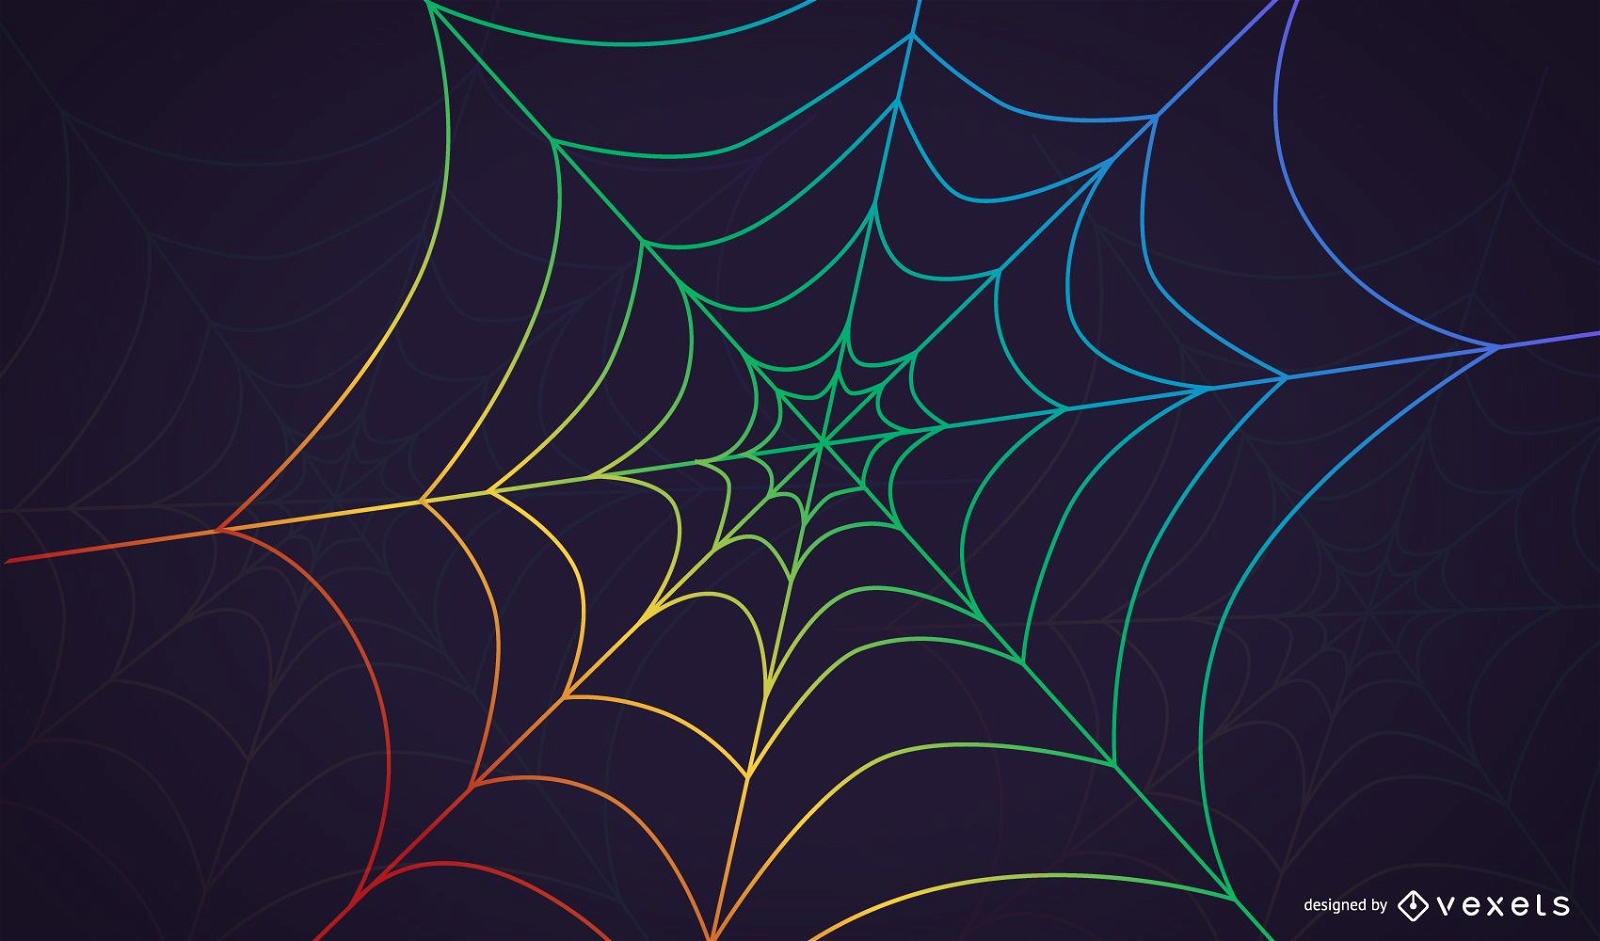 Regenbogen-Spinnennetz-Hintergrund mit Tautropfen